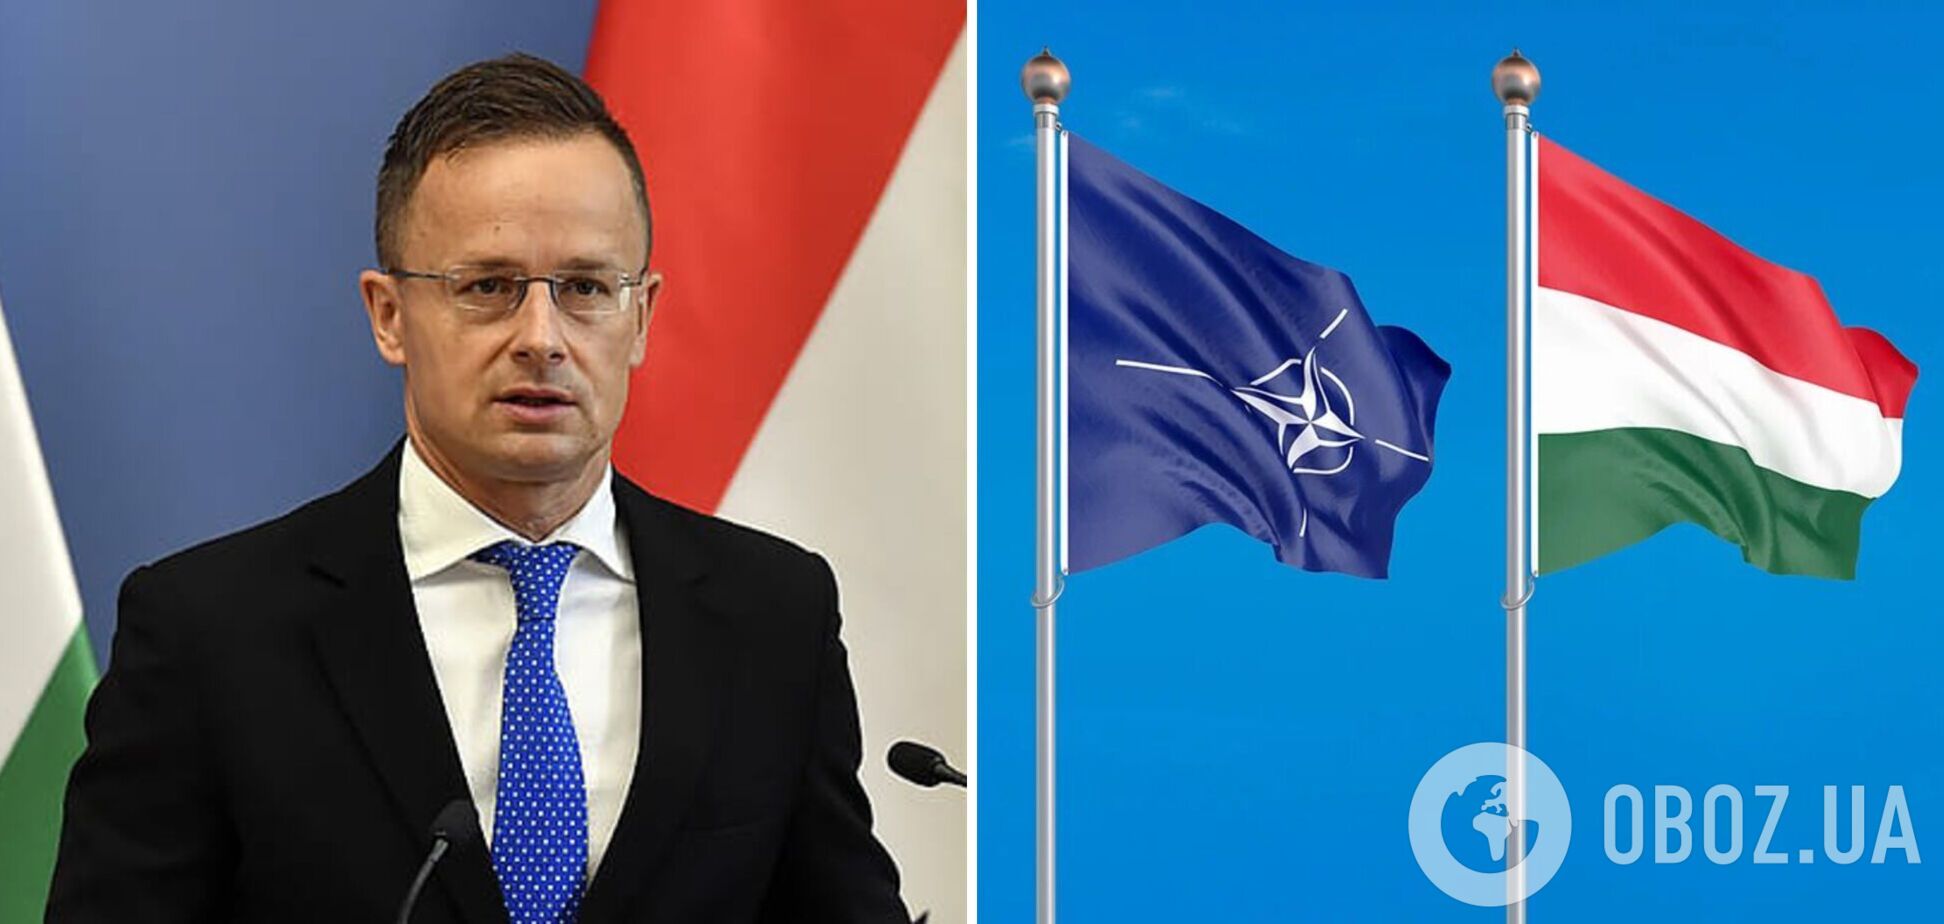 Угорщина відмовилася від розміщення додаткових сил НАТО у країні: Сіярто назвав причину